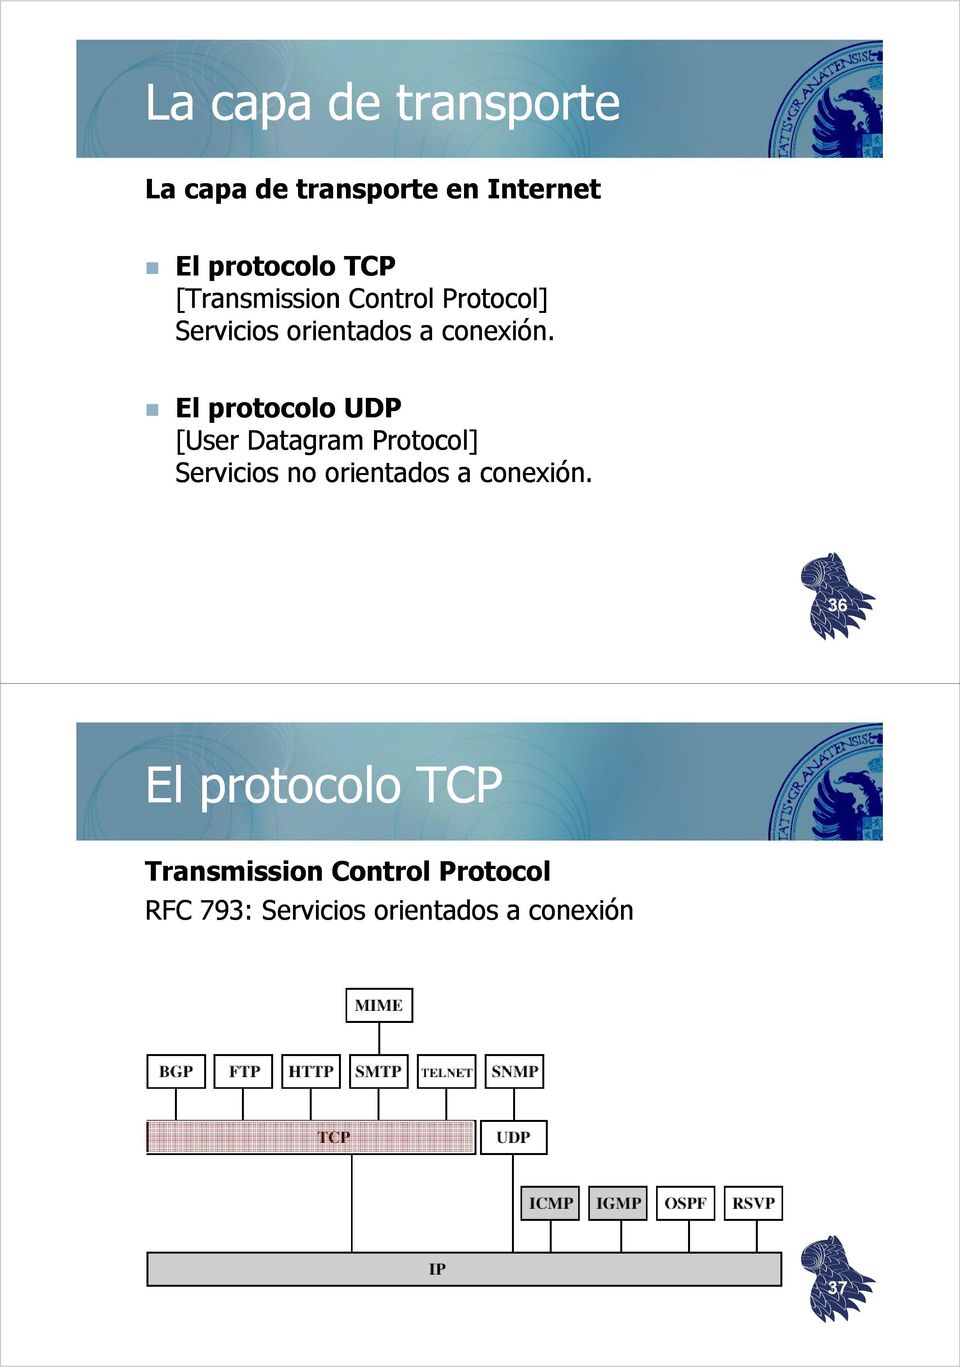 El protocolo UDP [User Datagram Protocol] Servicios no orientados a conexión.